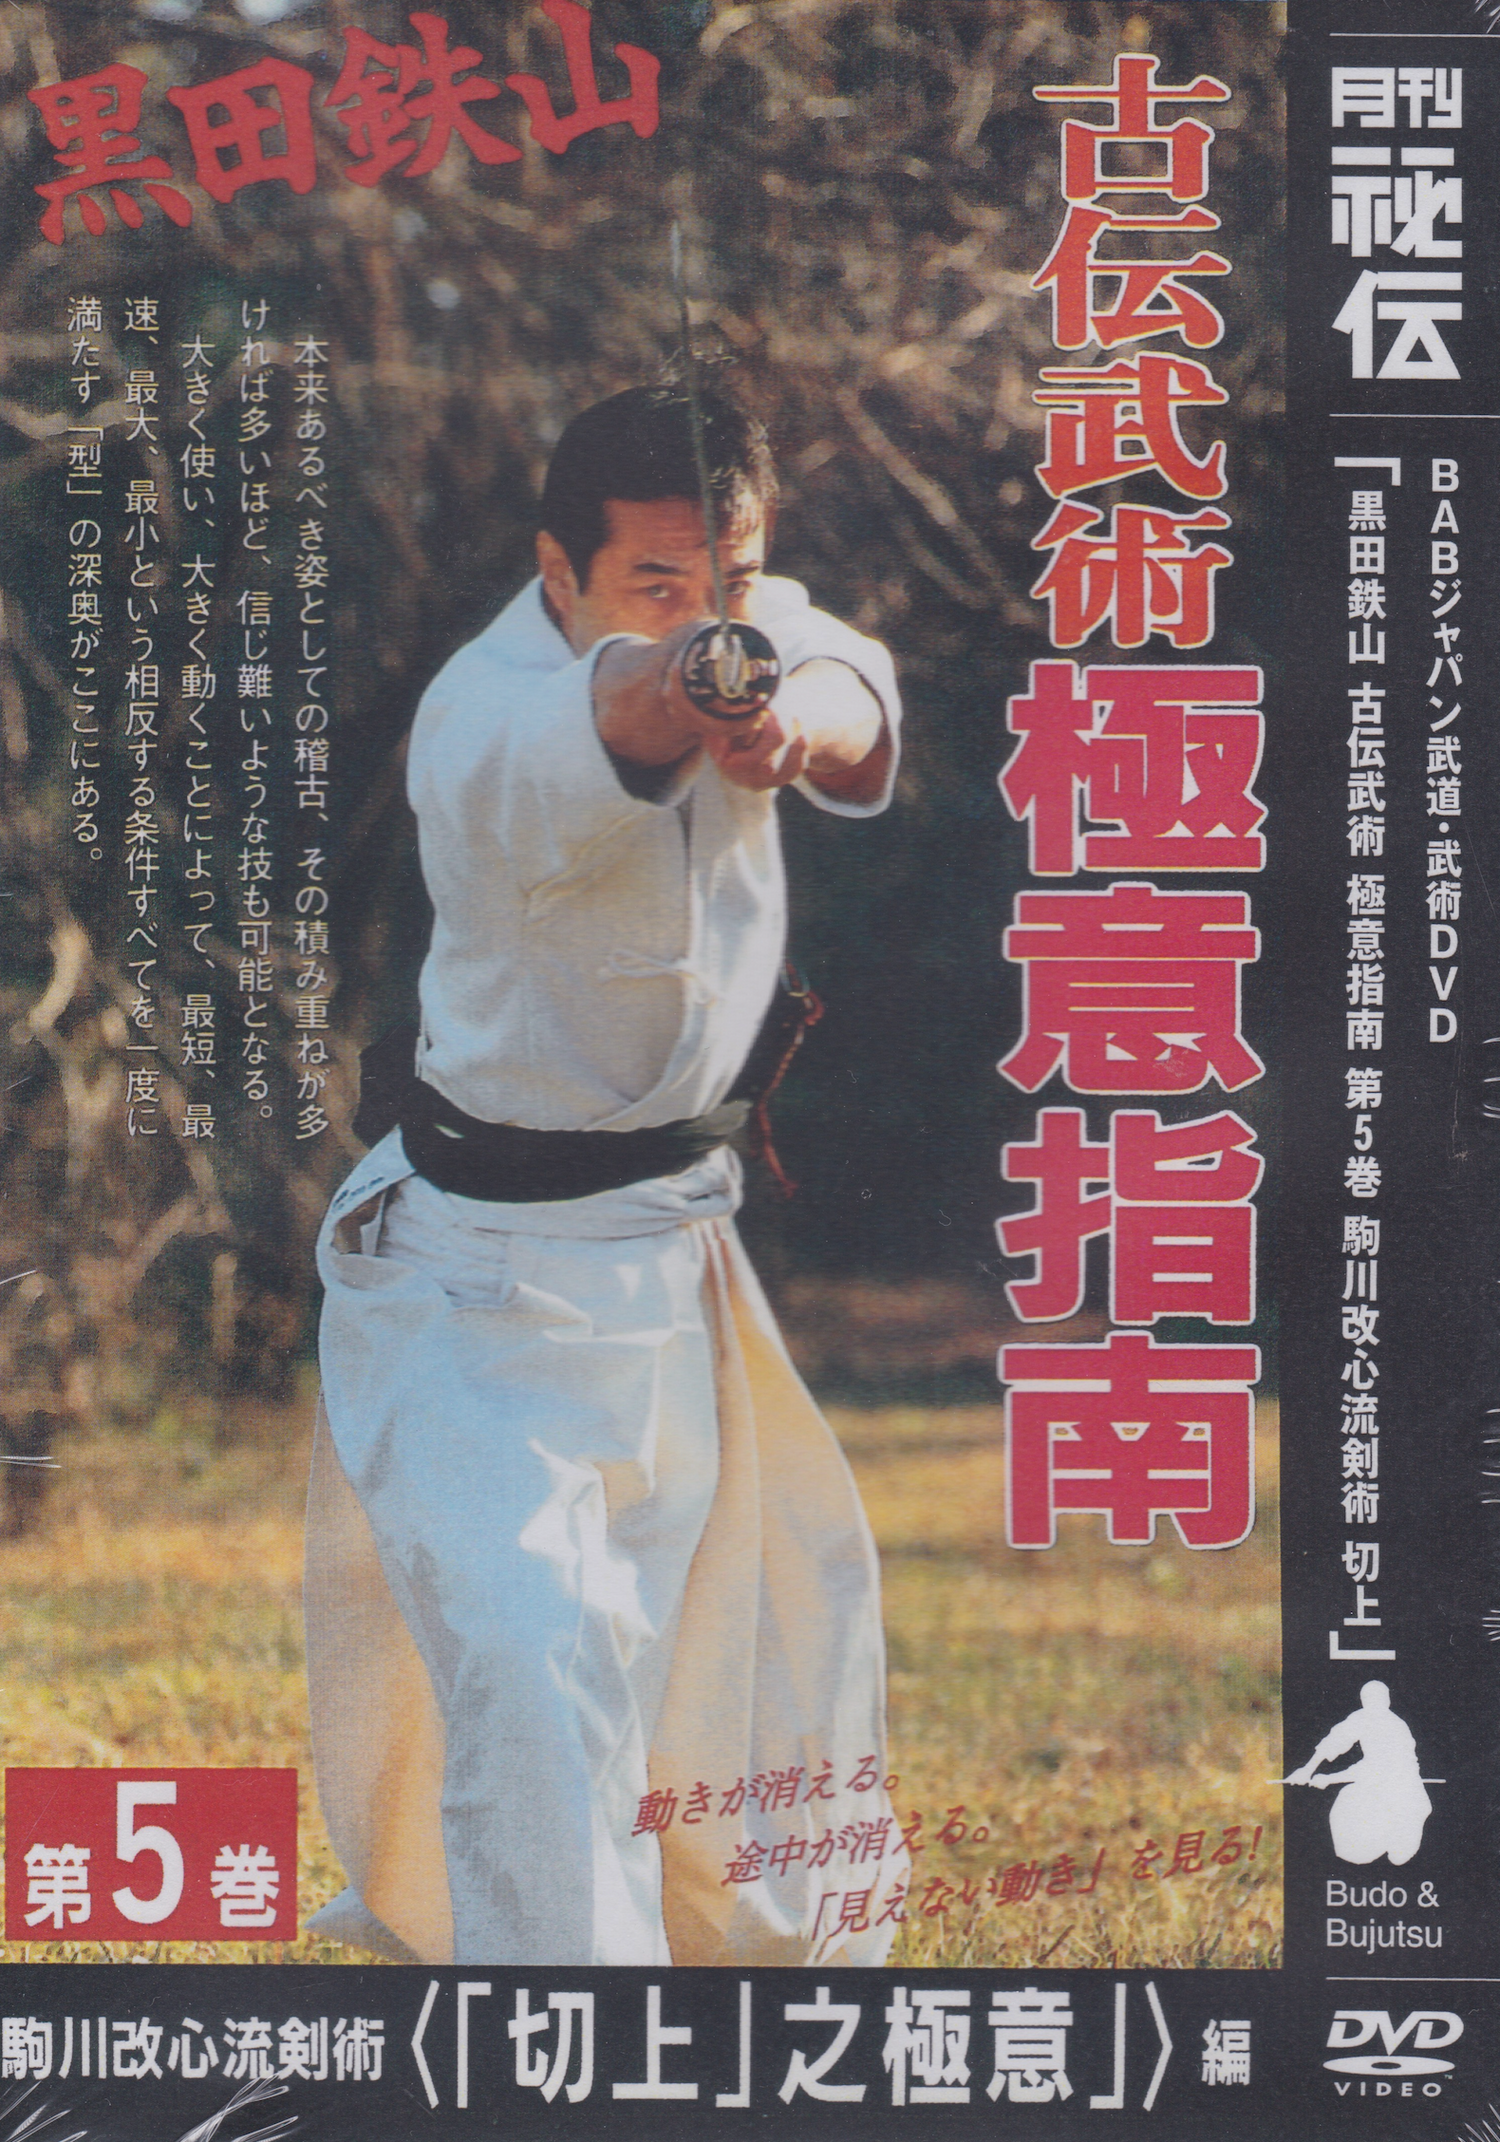 黒田鉄山 5: 剣術DVD